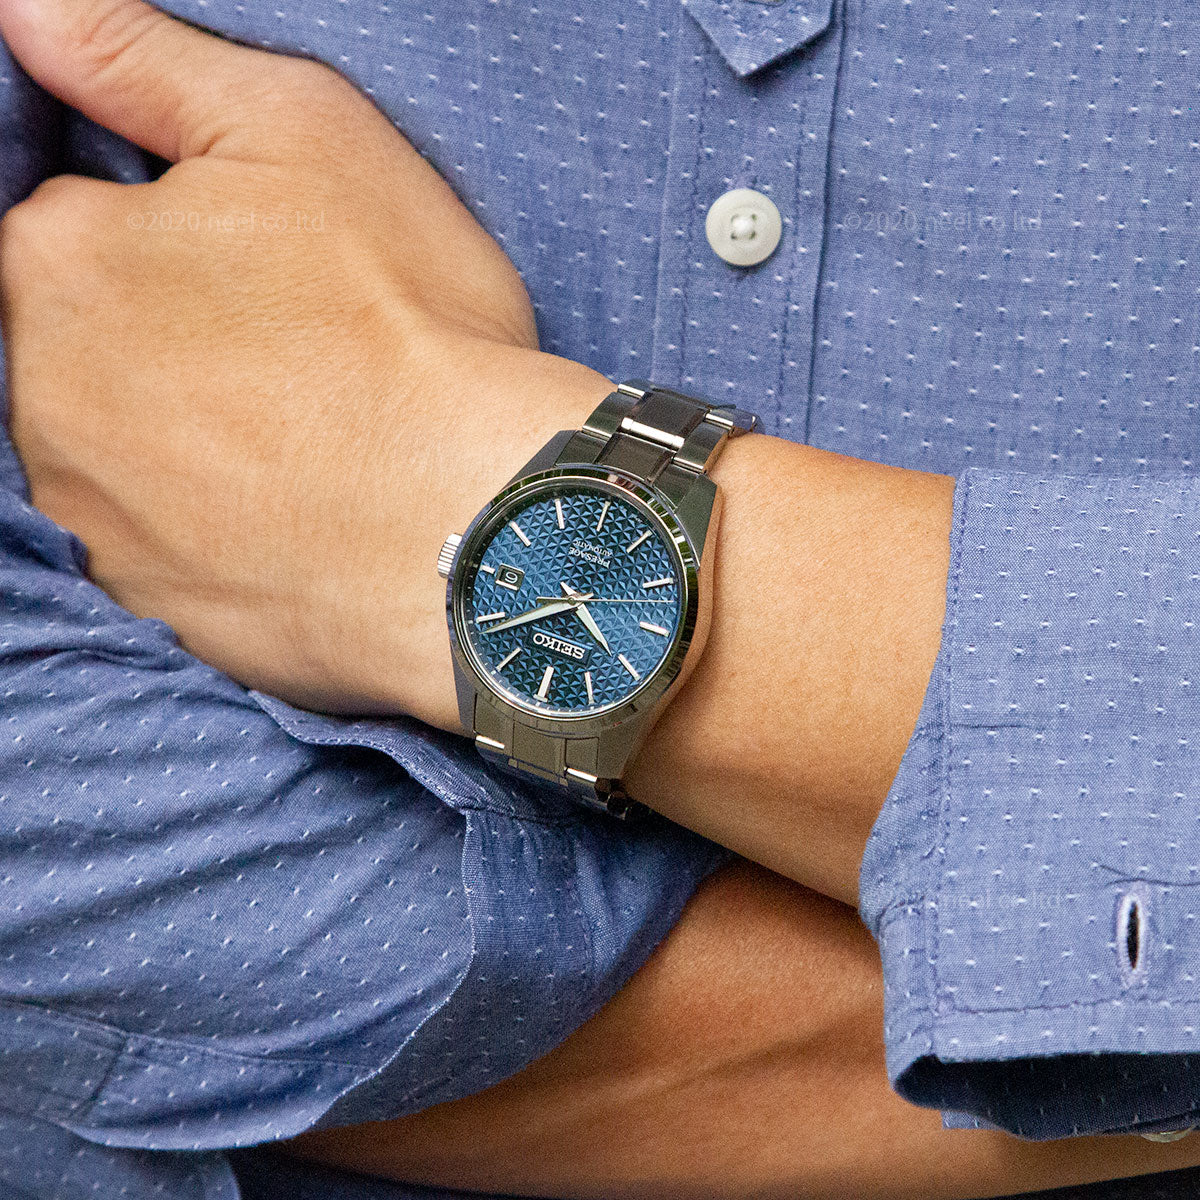 セイコー SEIKO PRESAGE 腕時計 メンズ SARJ003 プレザージュ プレステージライン 自動巻き 藍鉄xシルバー アナログ表示